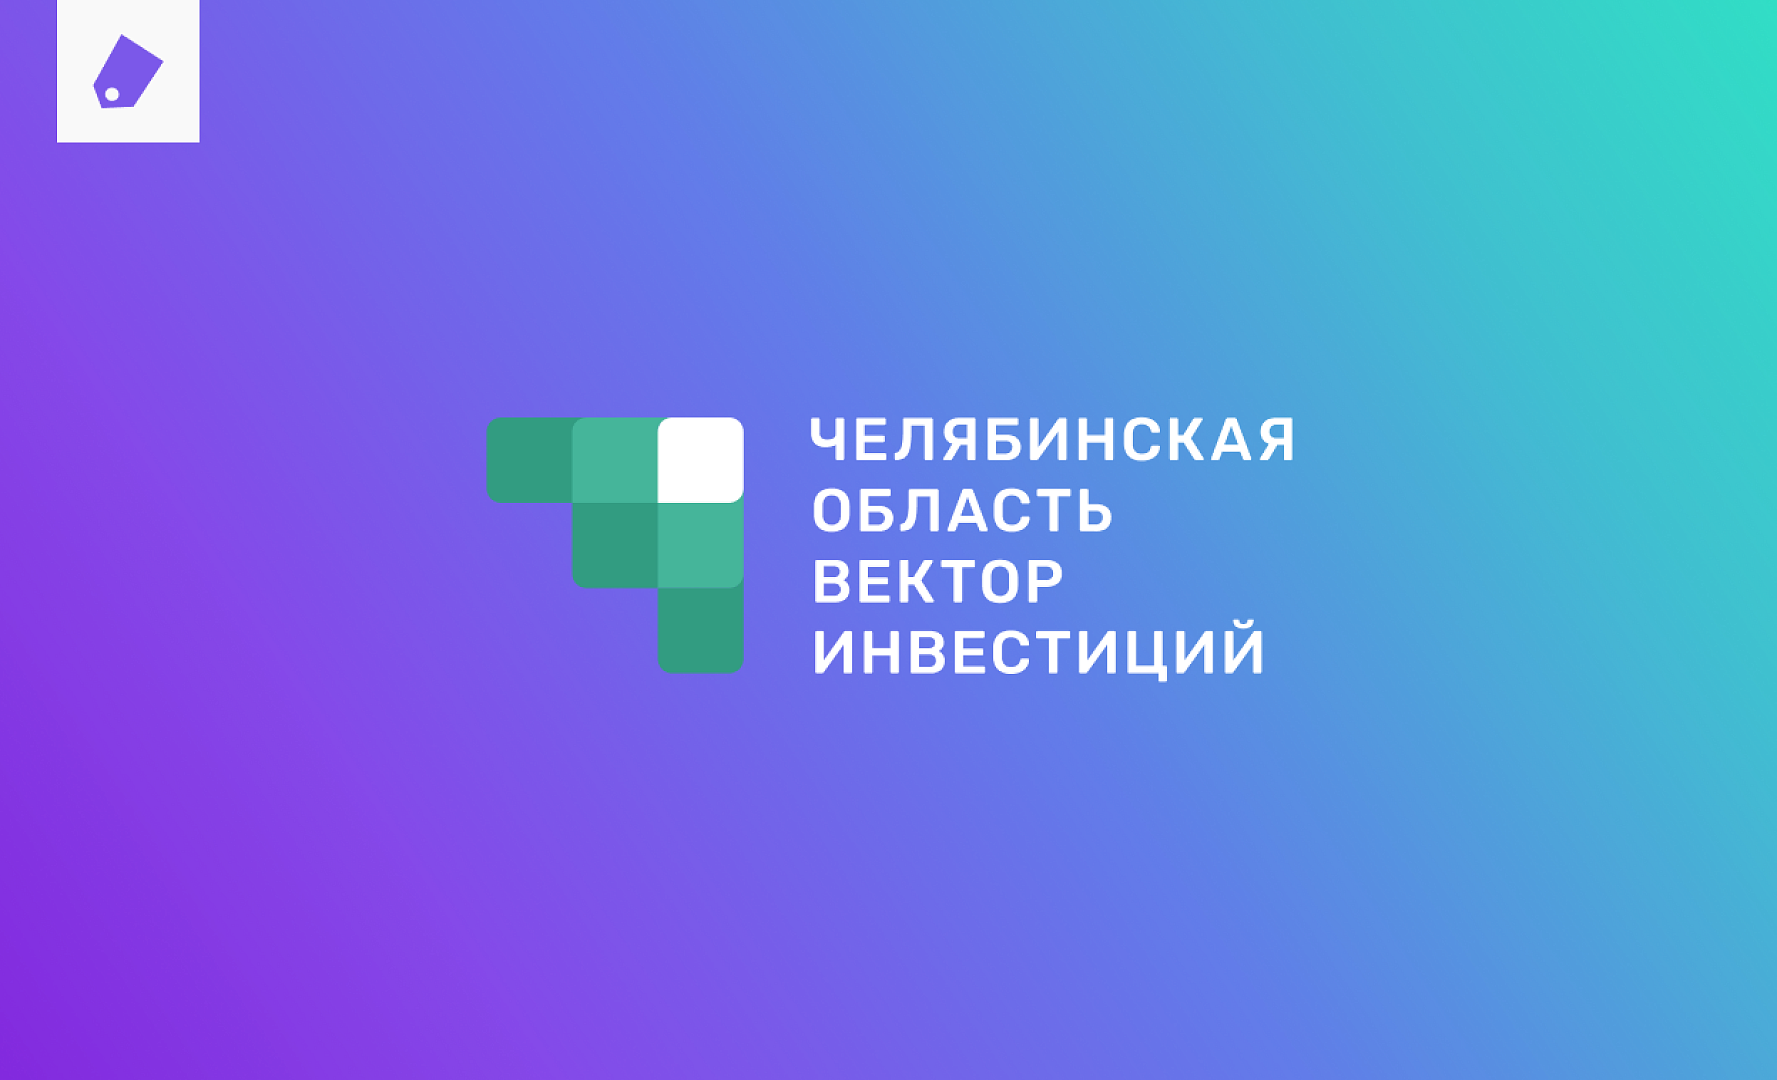 IT-компания Xpage I Инвестиционный портал Челябинской области